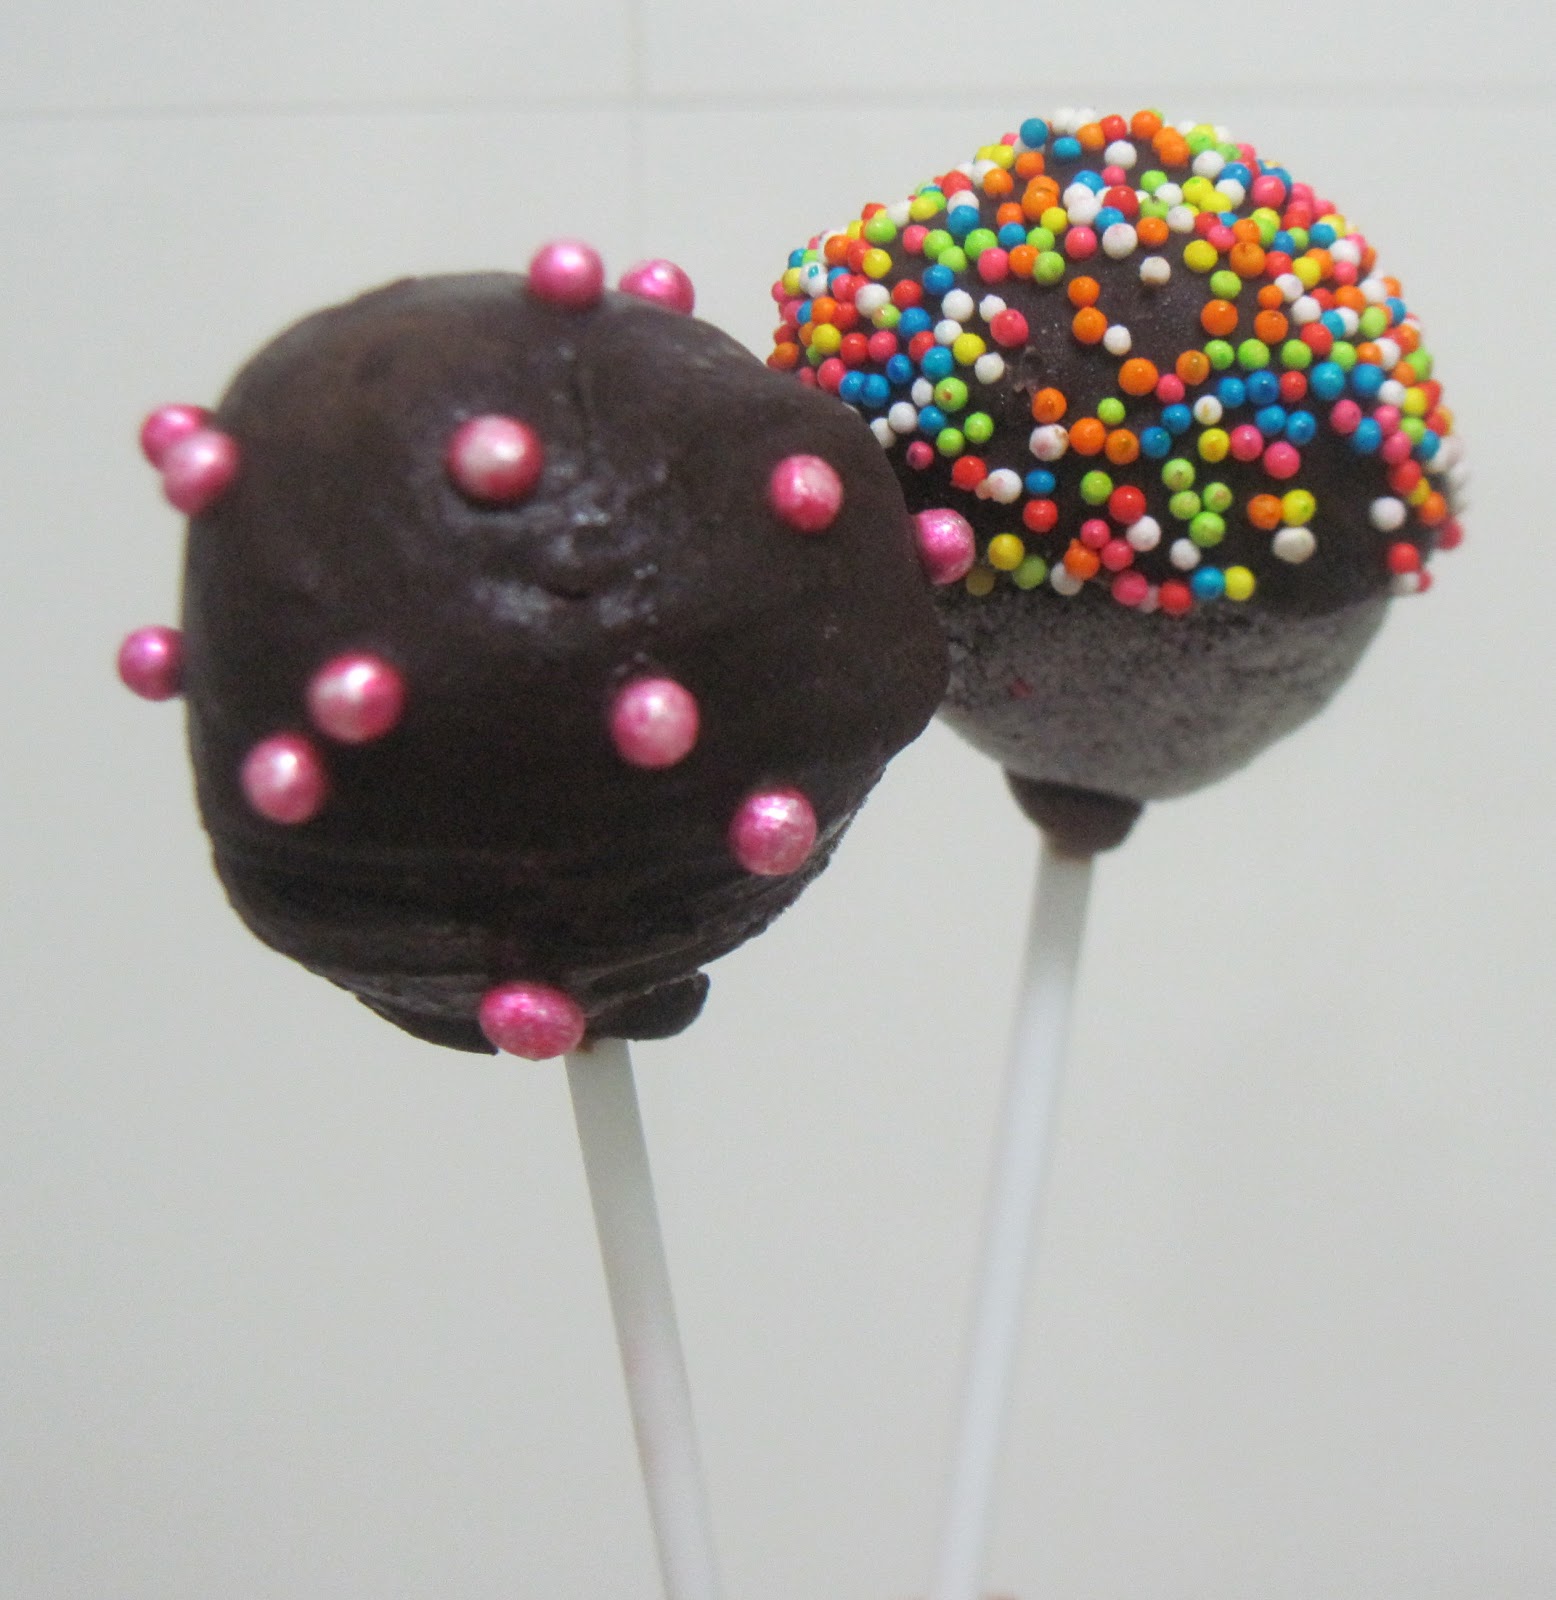 乐尔康 七彩特大 波板糖 直径19.5cm 超大 超级棒棒糖 500g批发价格 巧克力-食品商务网